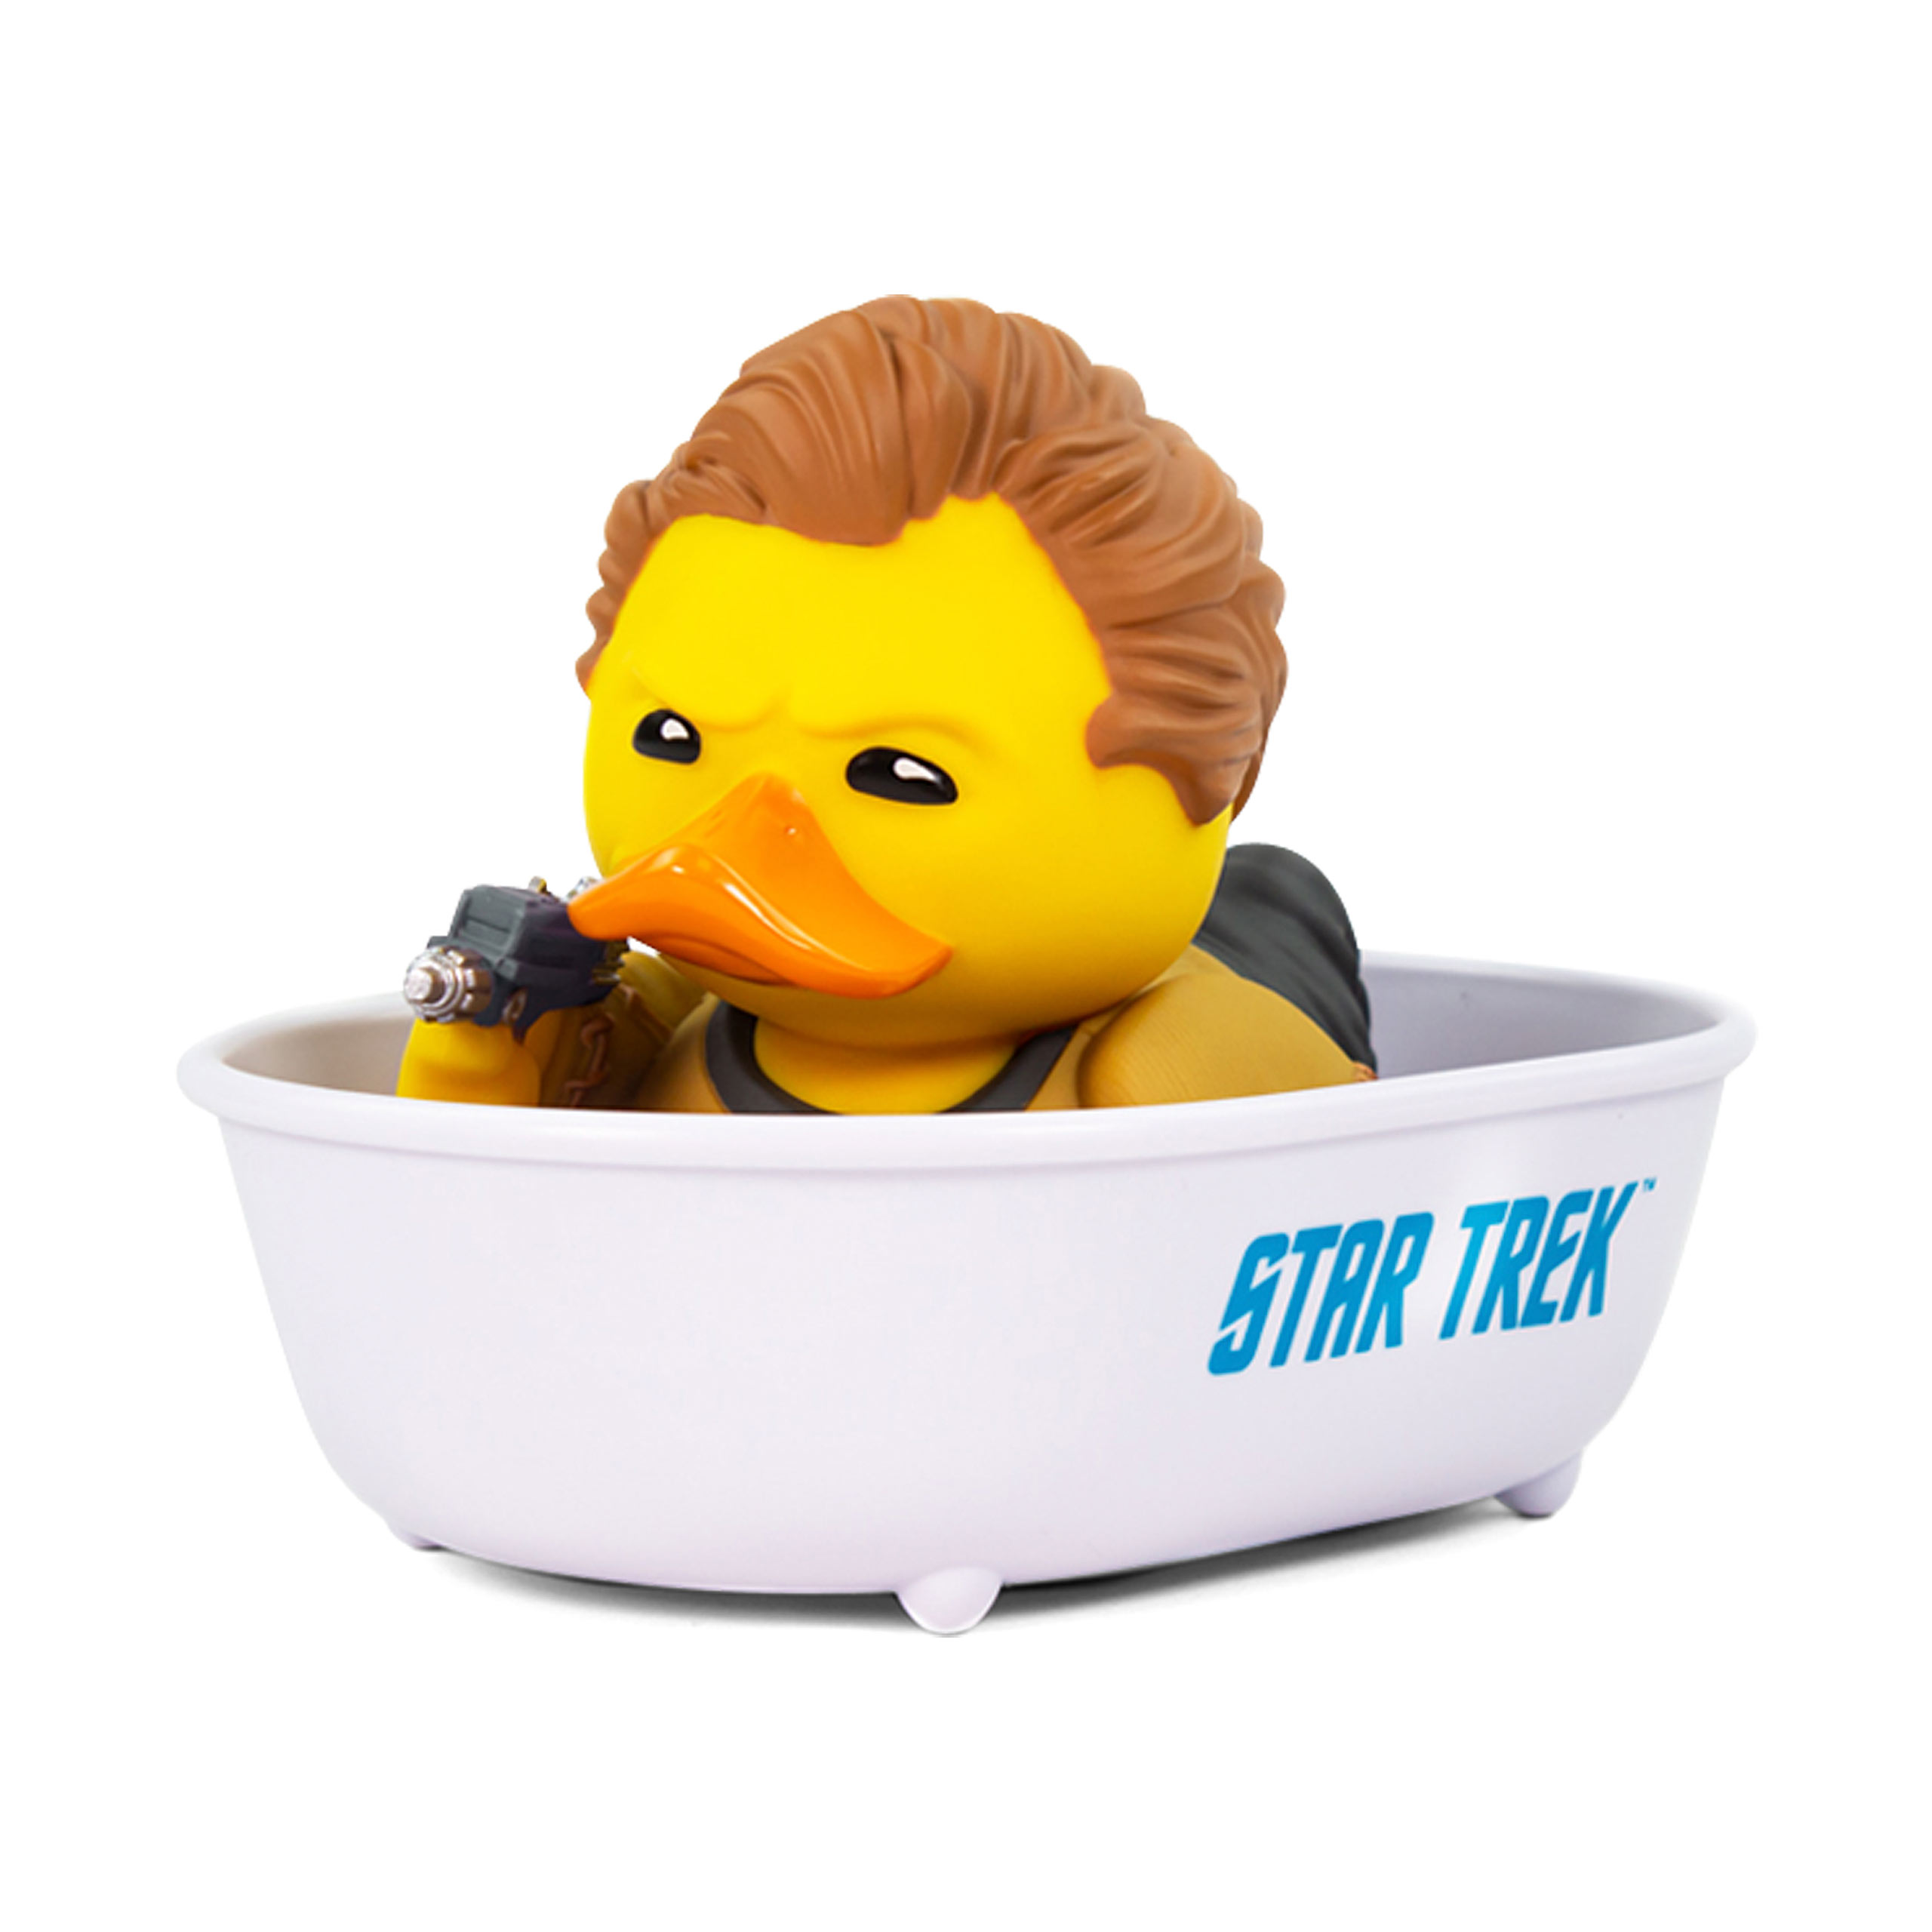 Star Trek - Capitaine Kirk TUBBZ déco canard